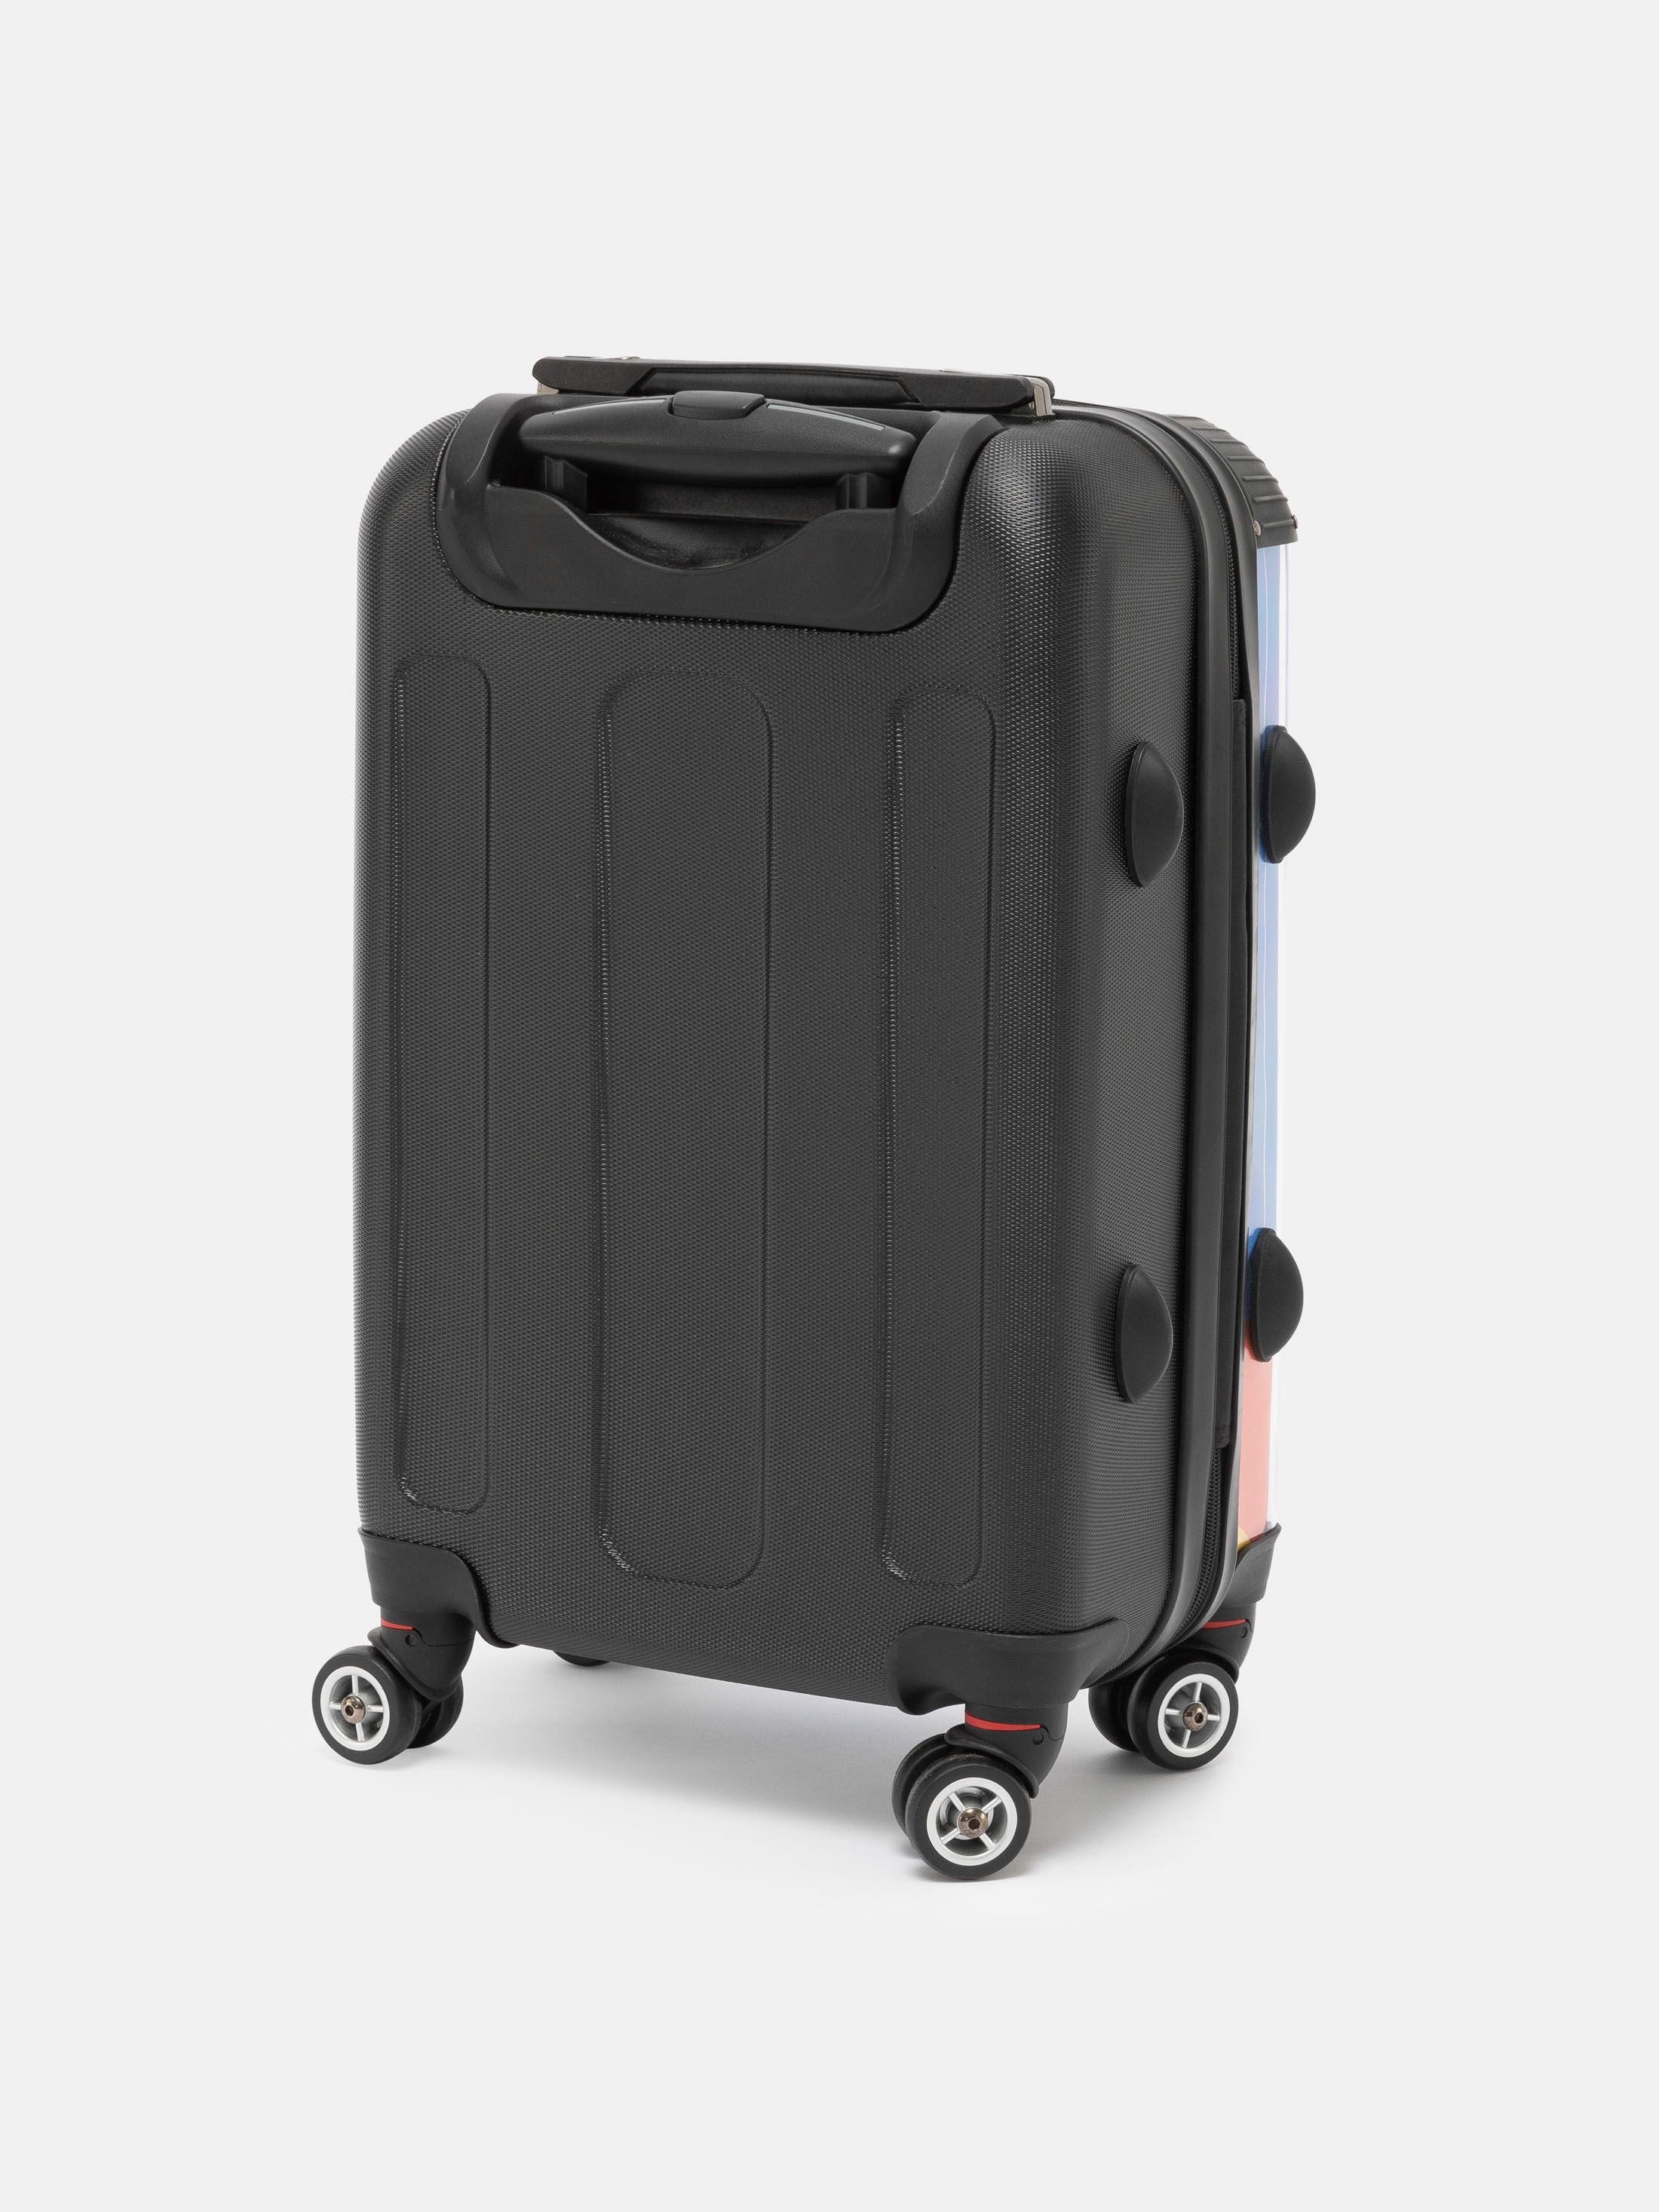 Designa din egen resväska